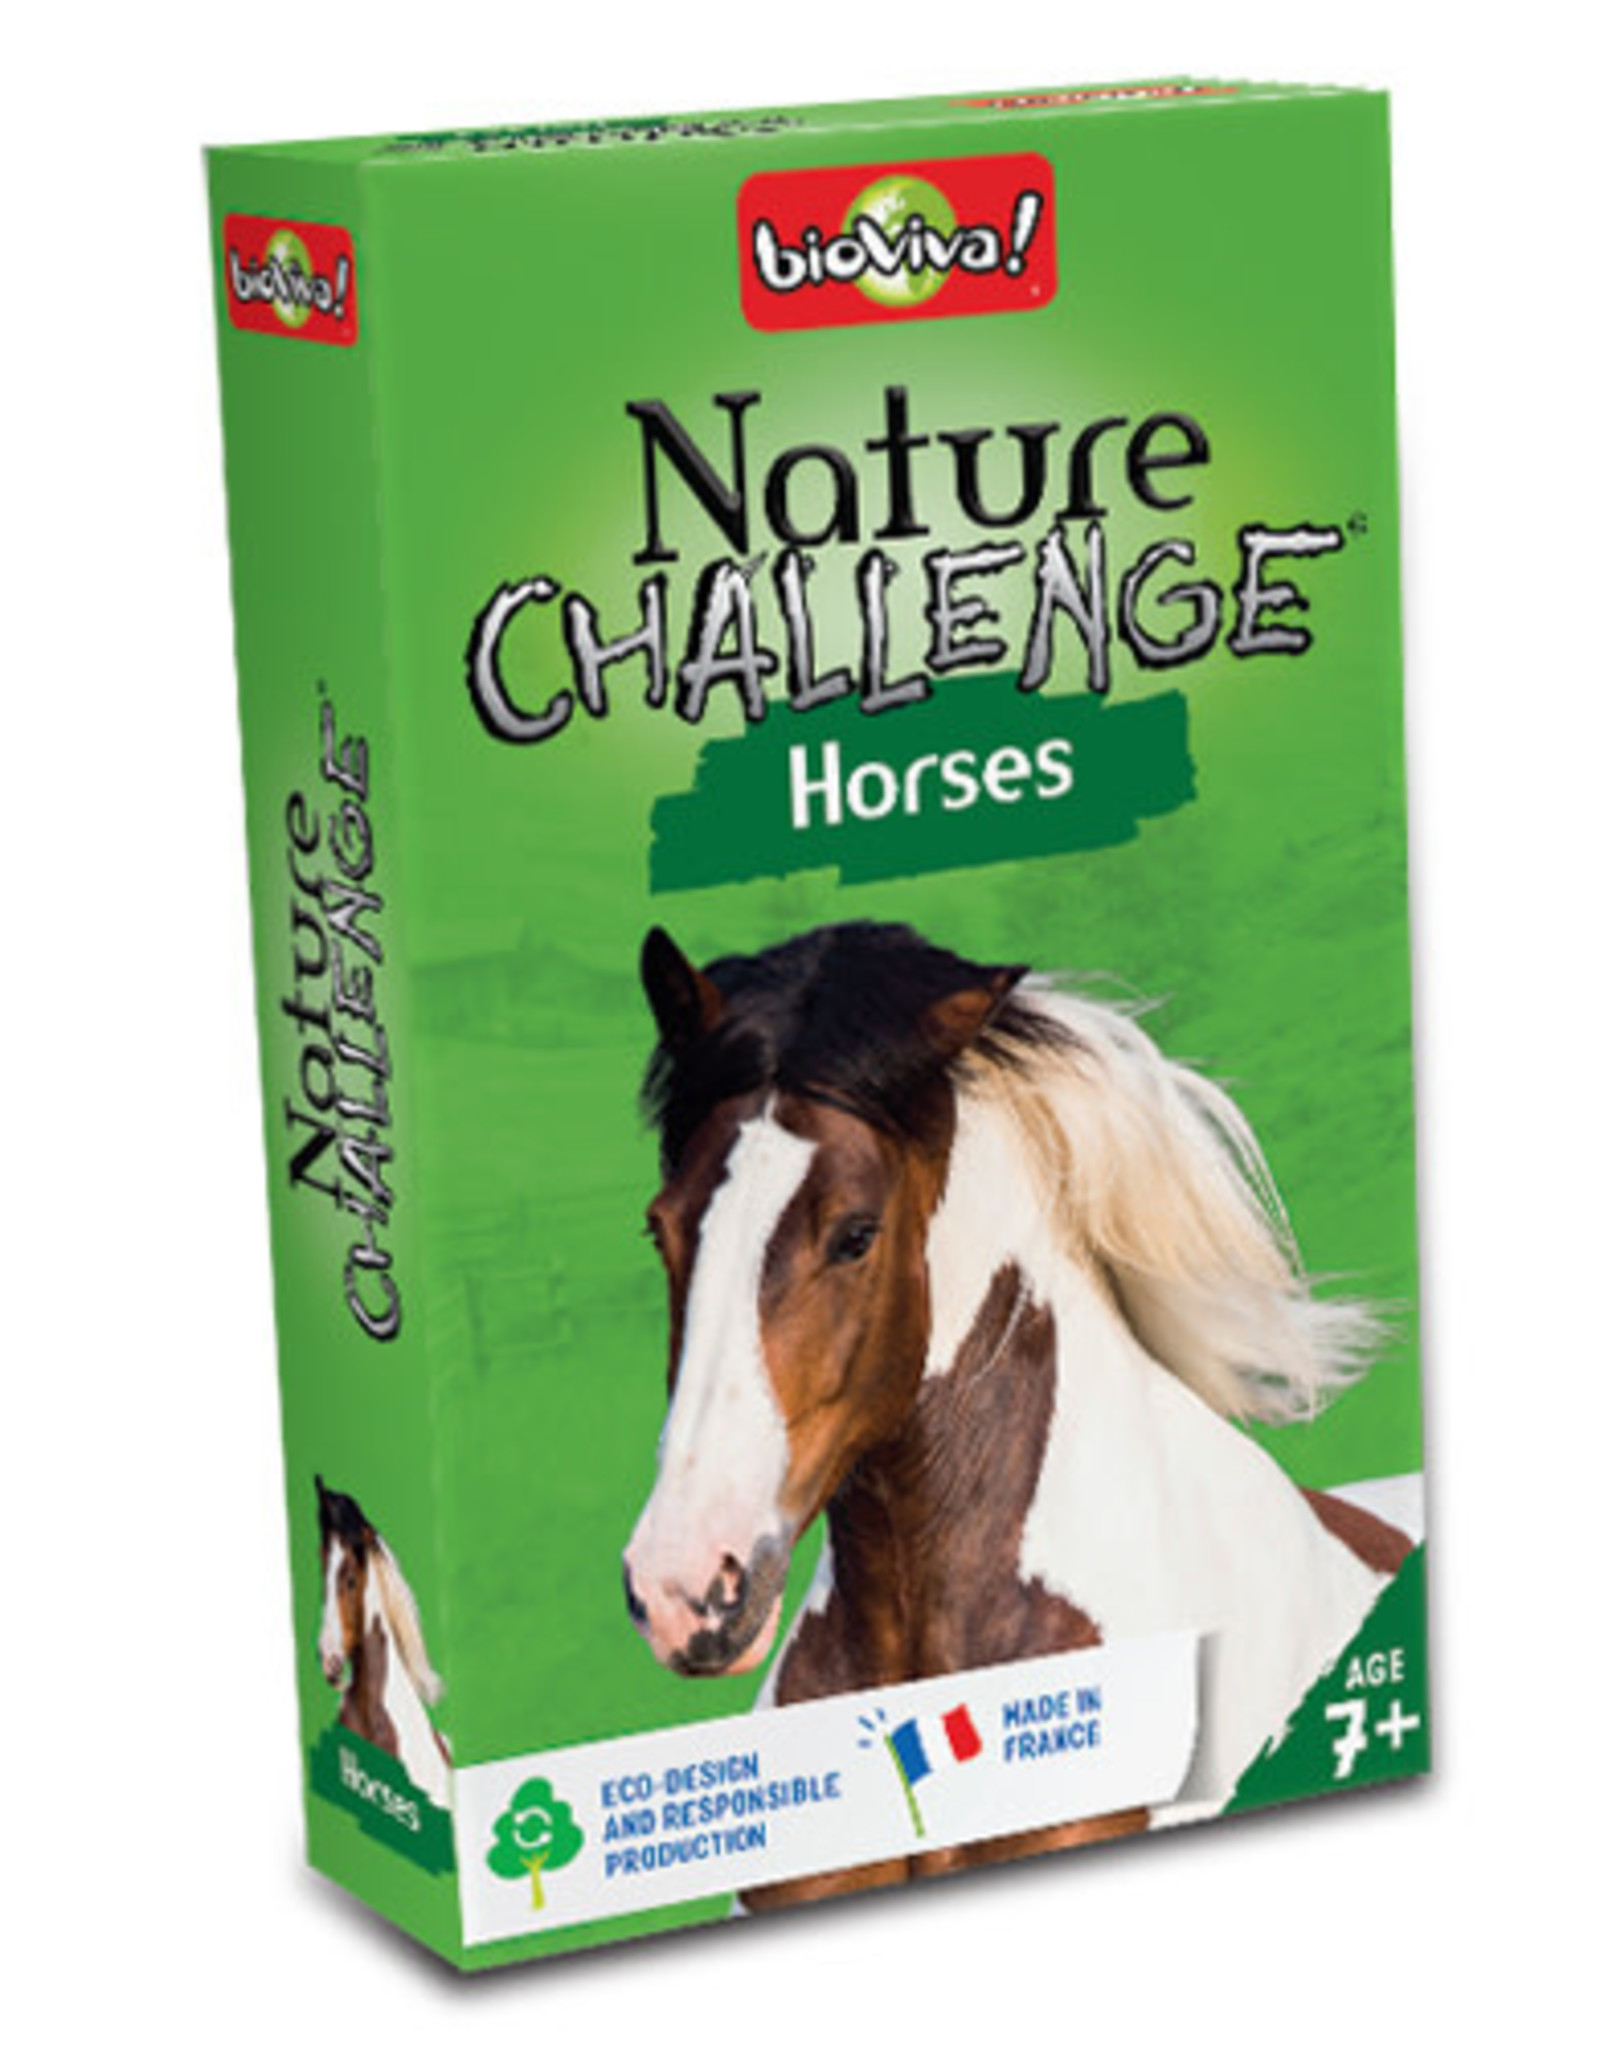 bioviva Nature Challenge Horses